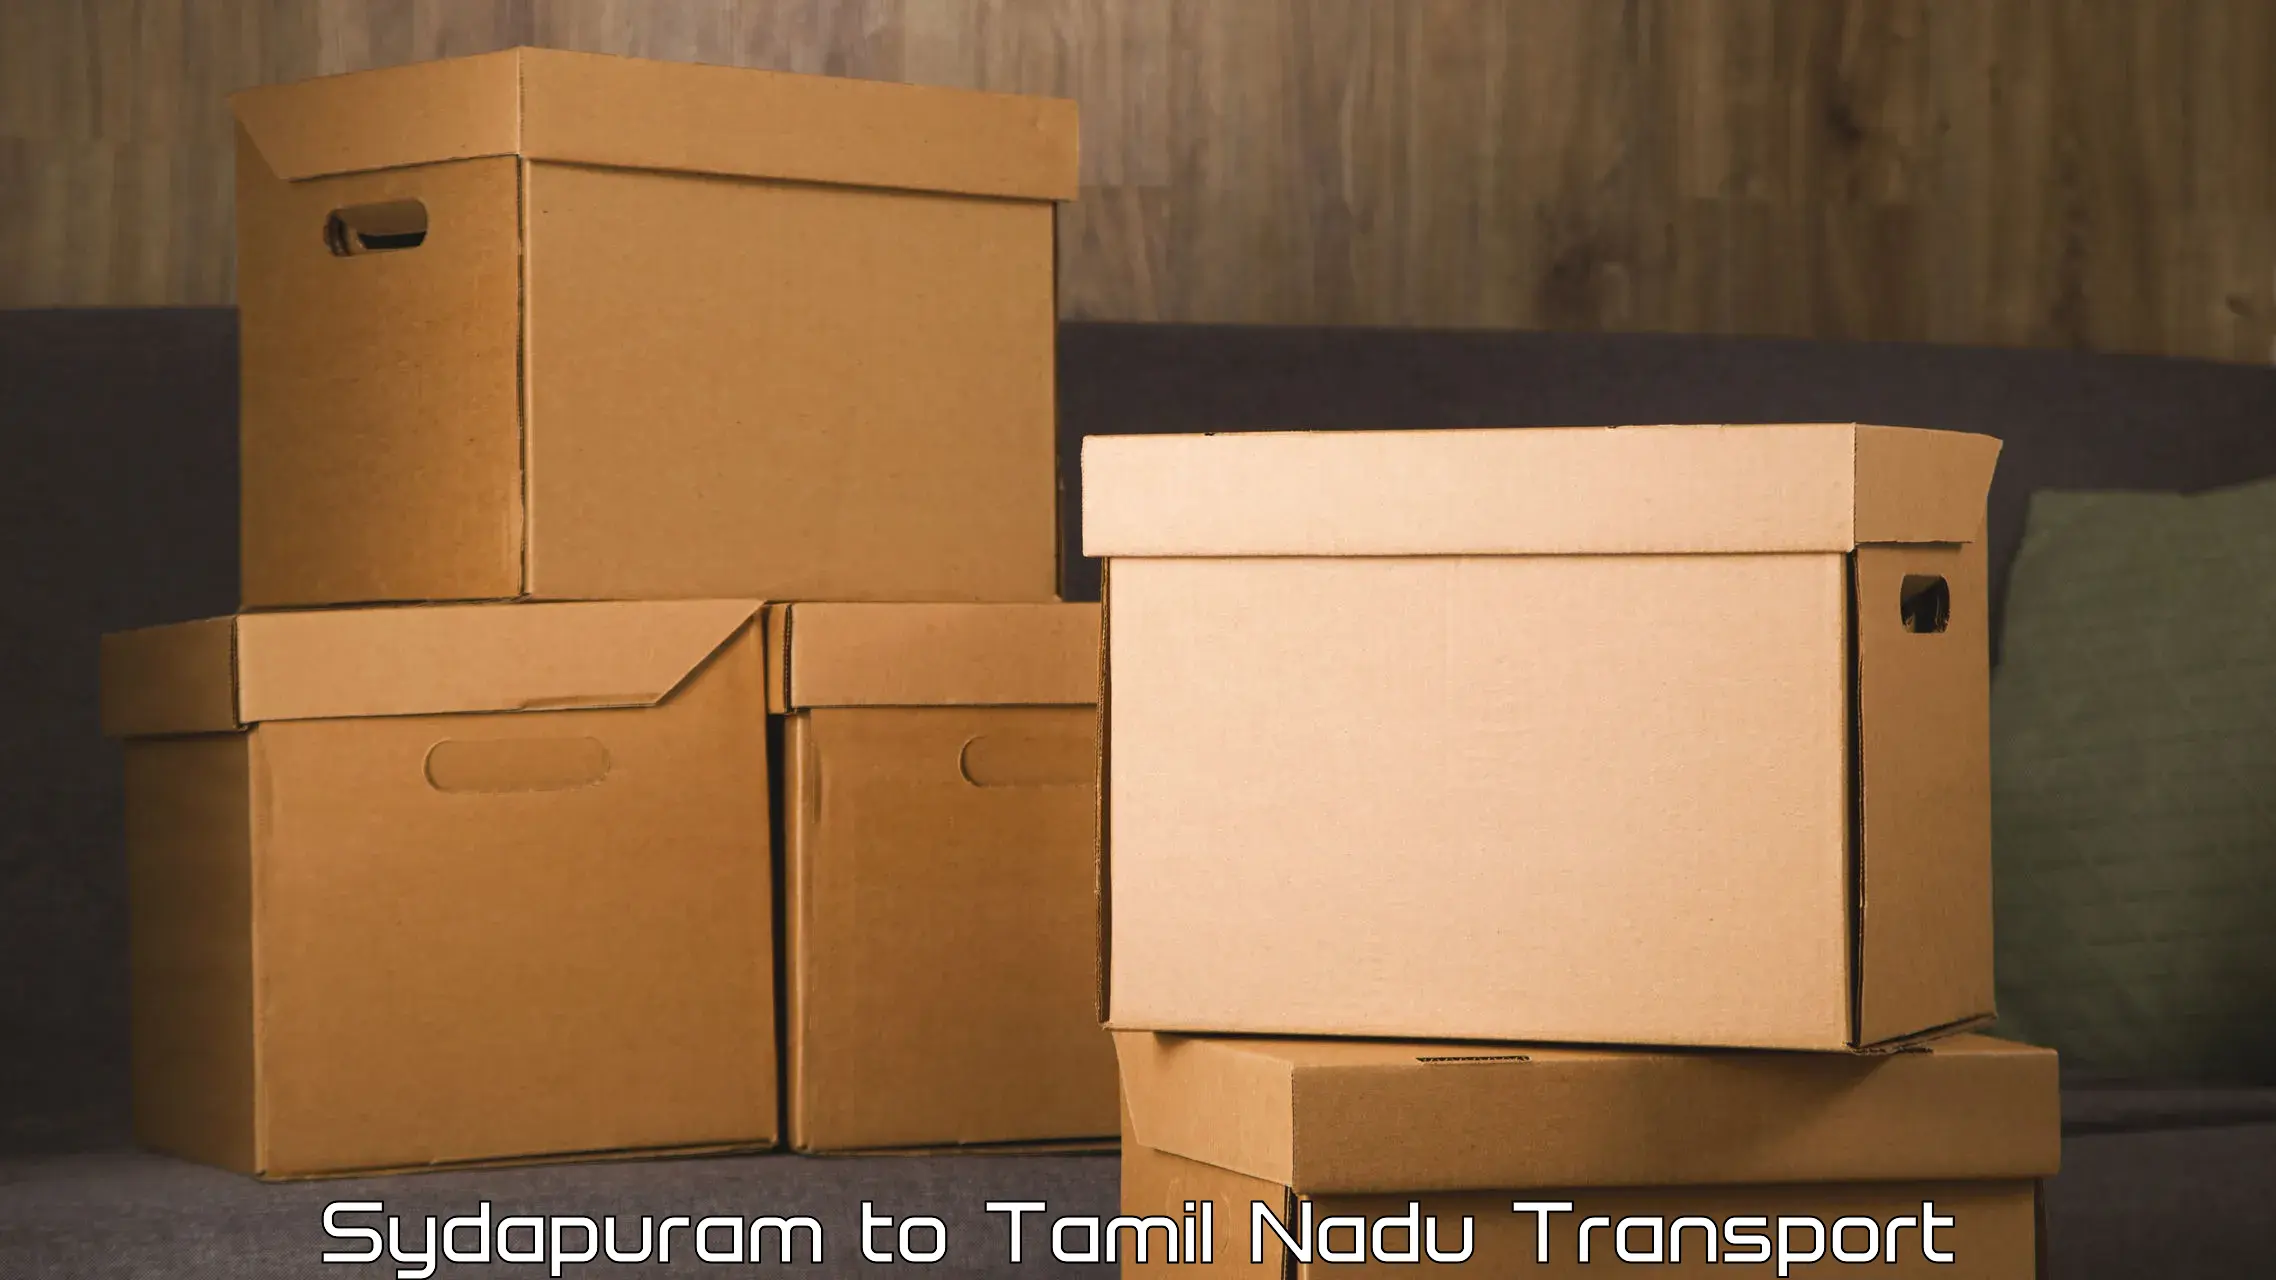 Transport in sharing Sydapuram to Papanasam